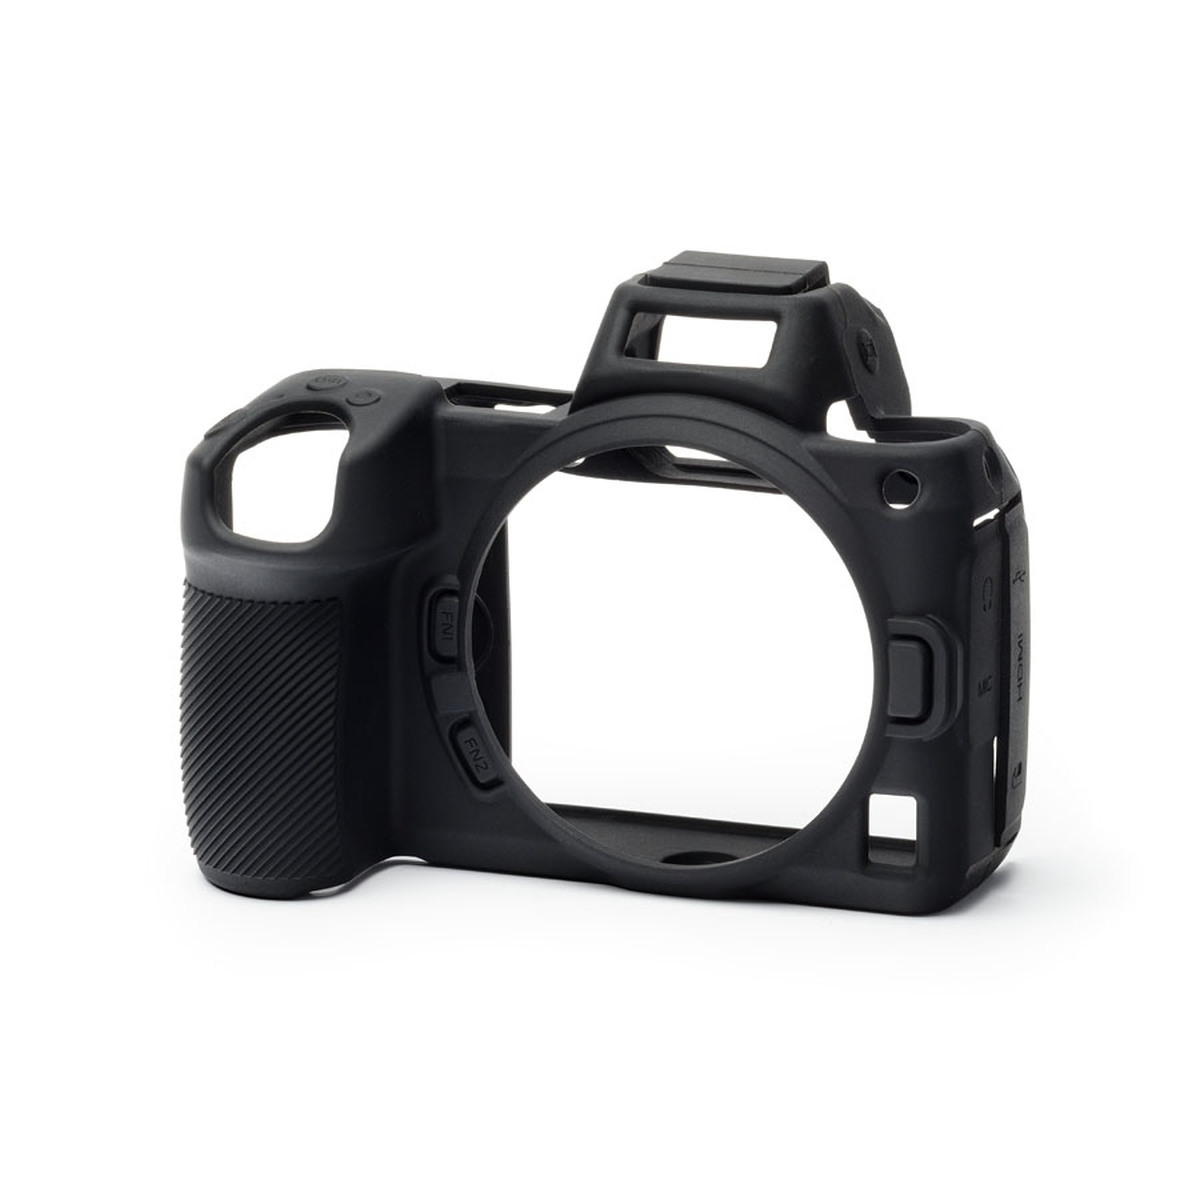 angenehm griffige Silikon Schutzhülle uneingeschränkte Bedienbarkeit passgenau Walimex pro easyCover für Nikon Z6 & Z7